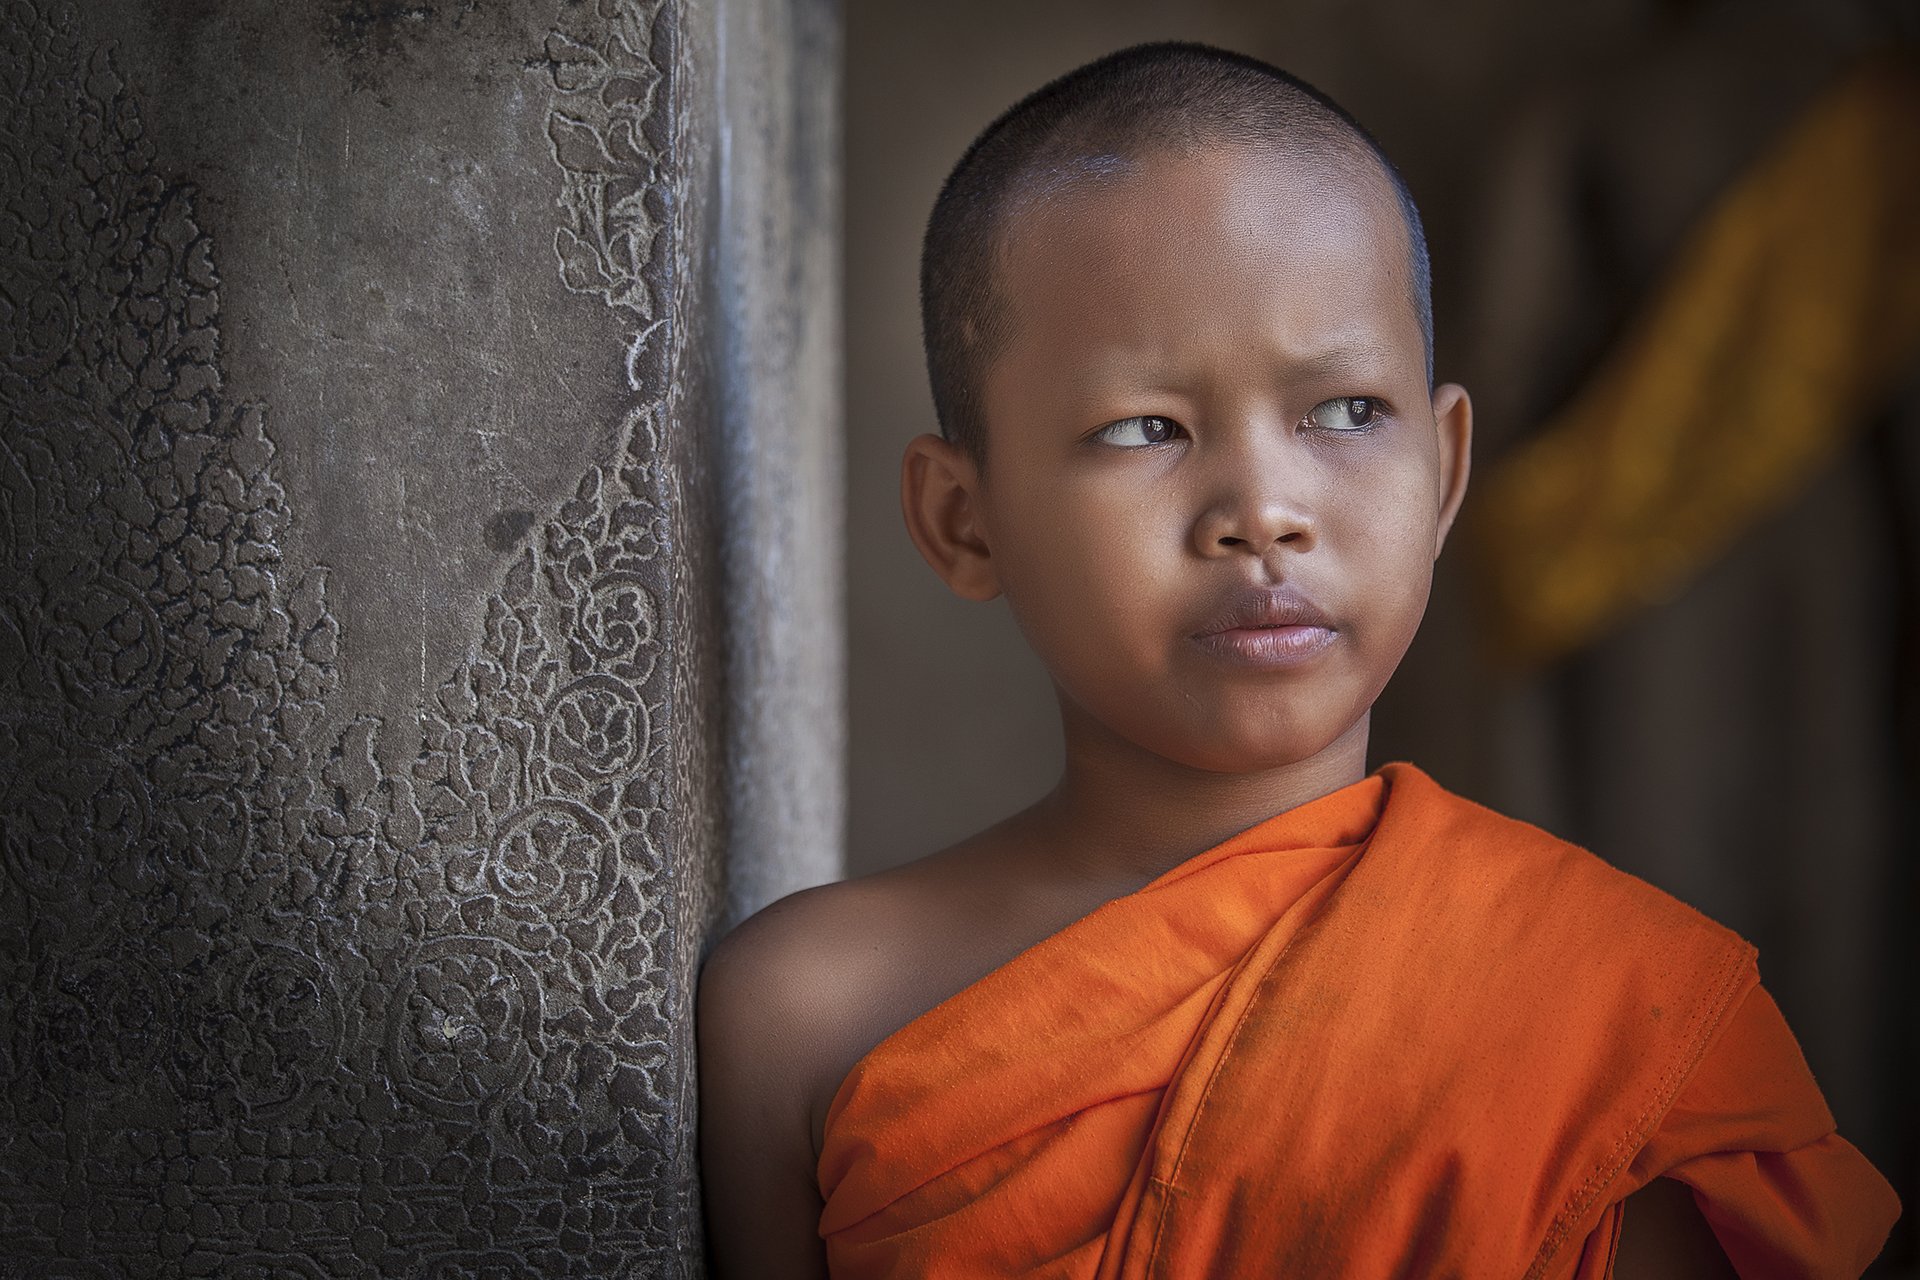 A young monk, Angkor Wat, Cambodia, Borislav Tolev